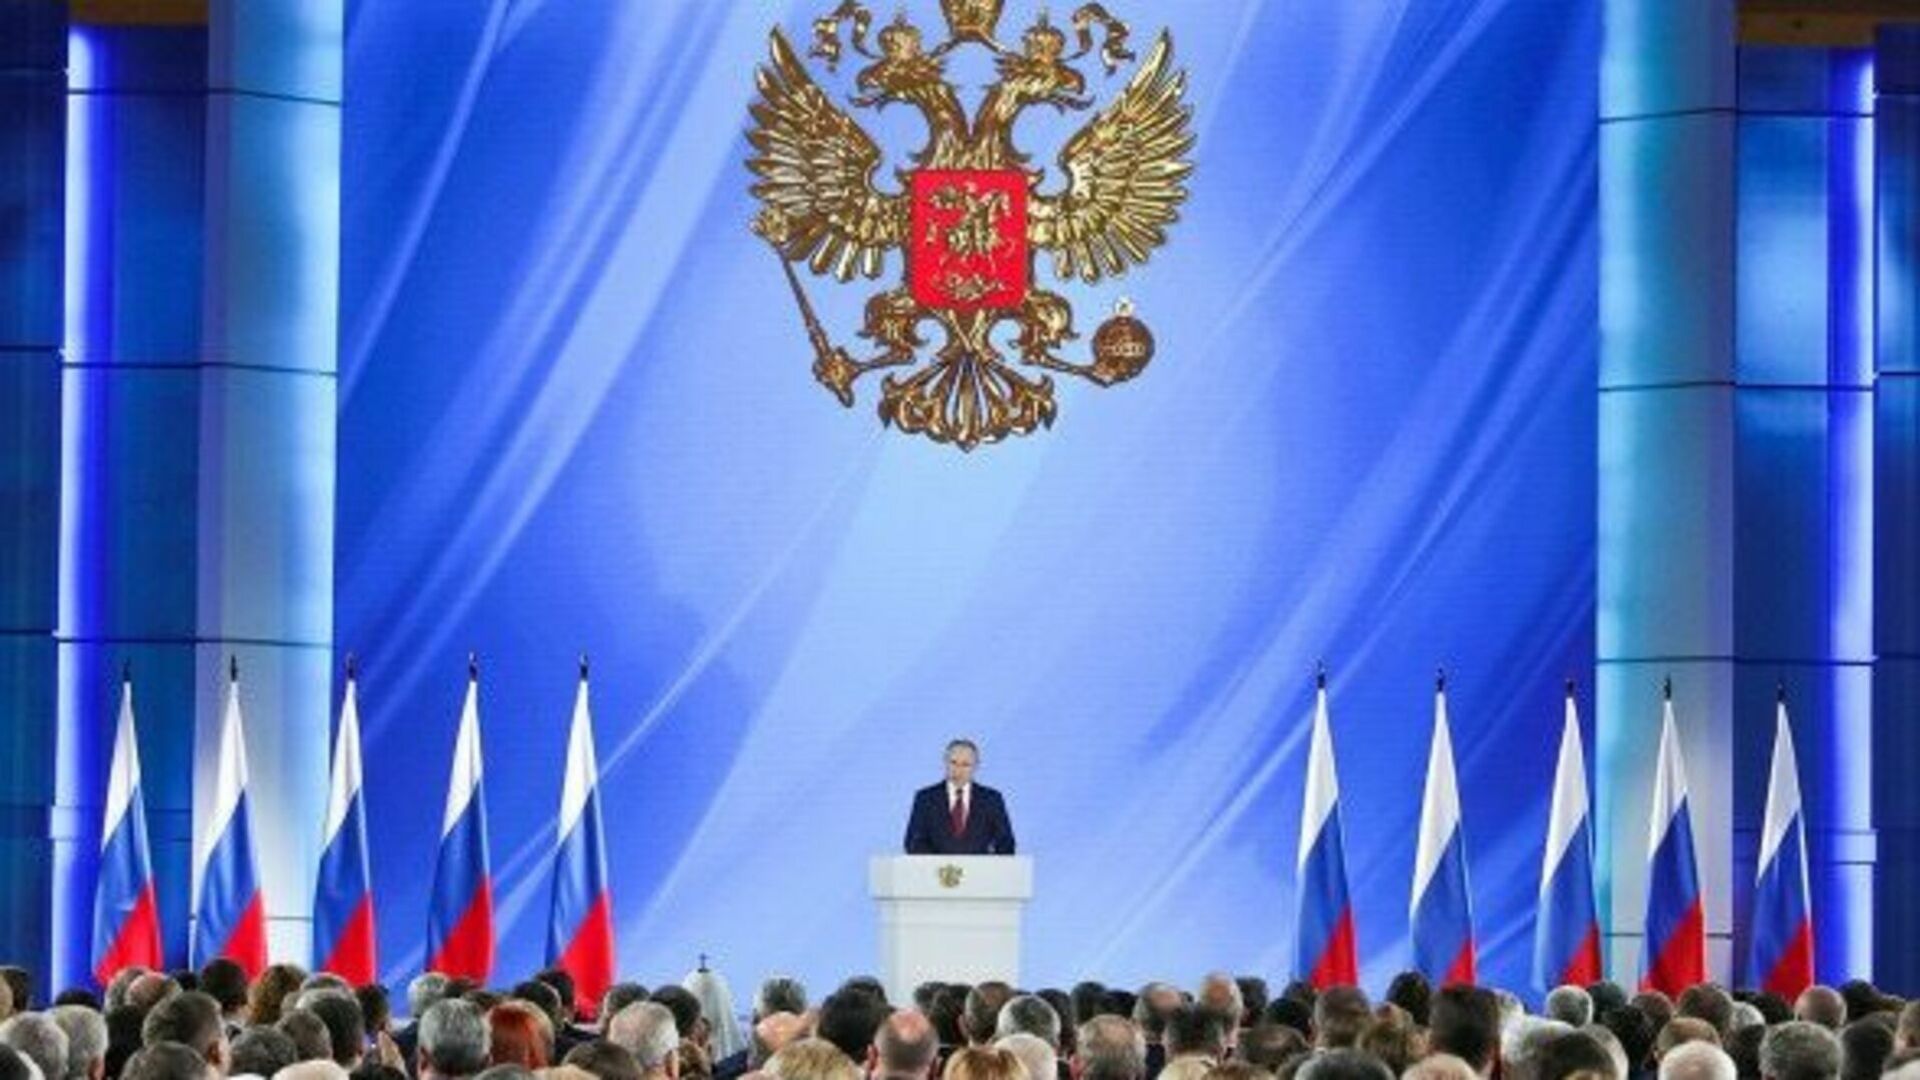 ВЦИОМ: 78% россиян сочли послание Владимира Путина искренним